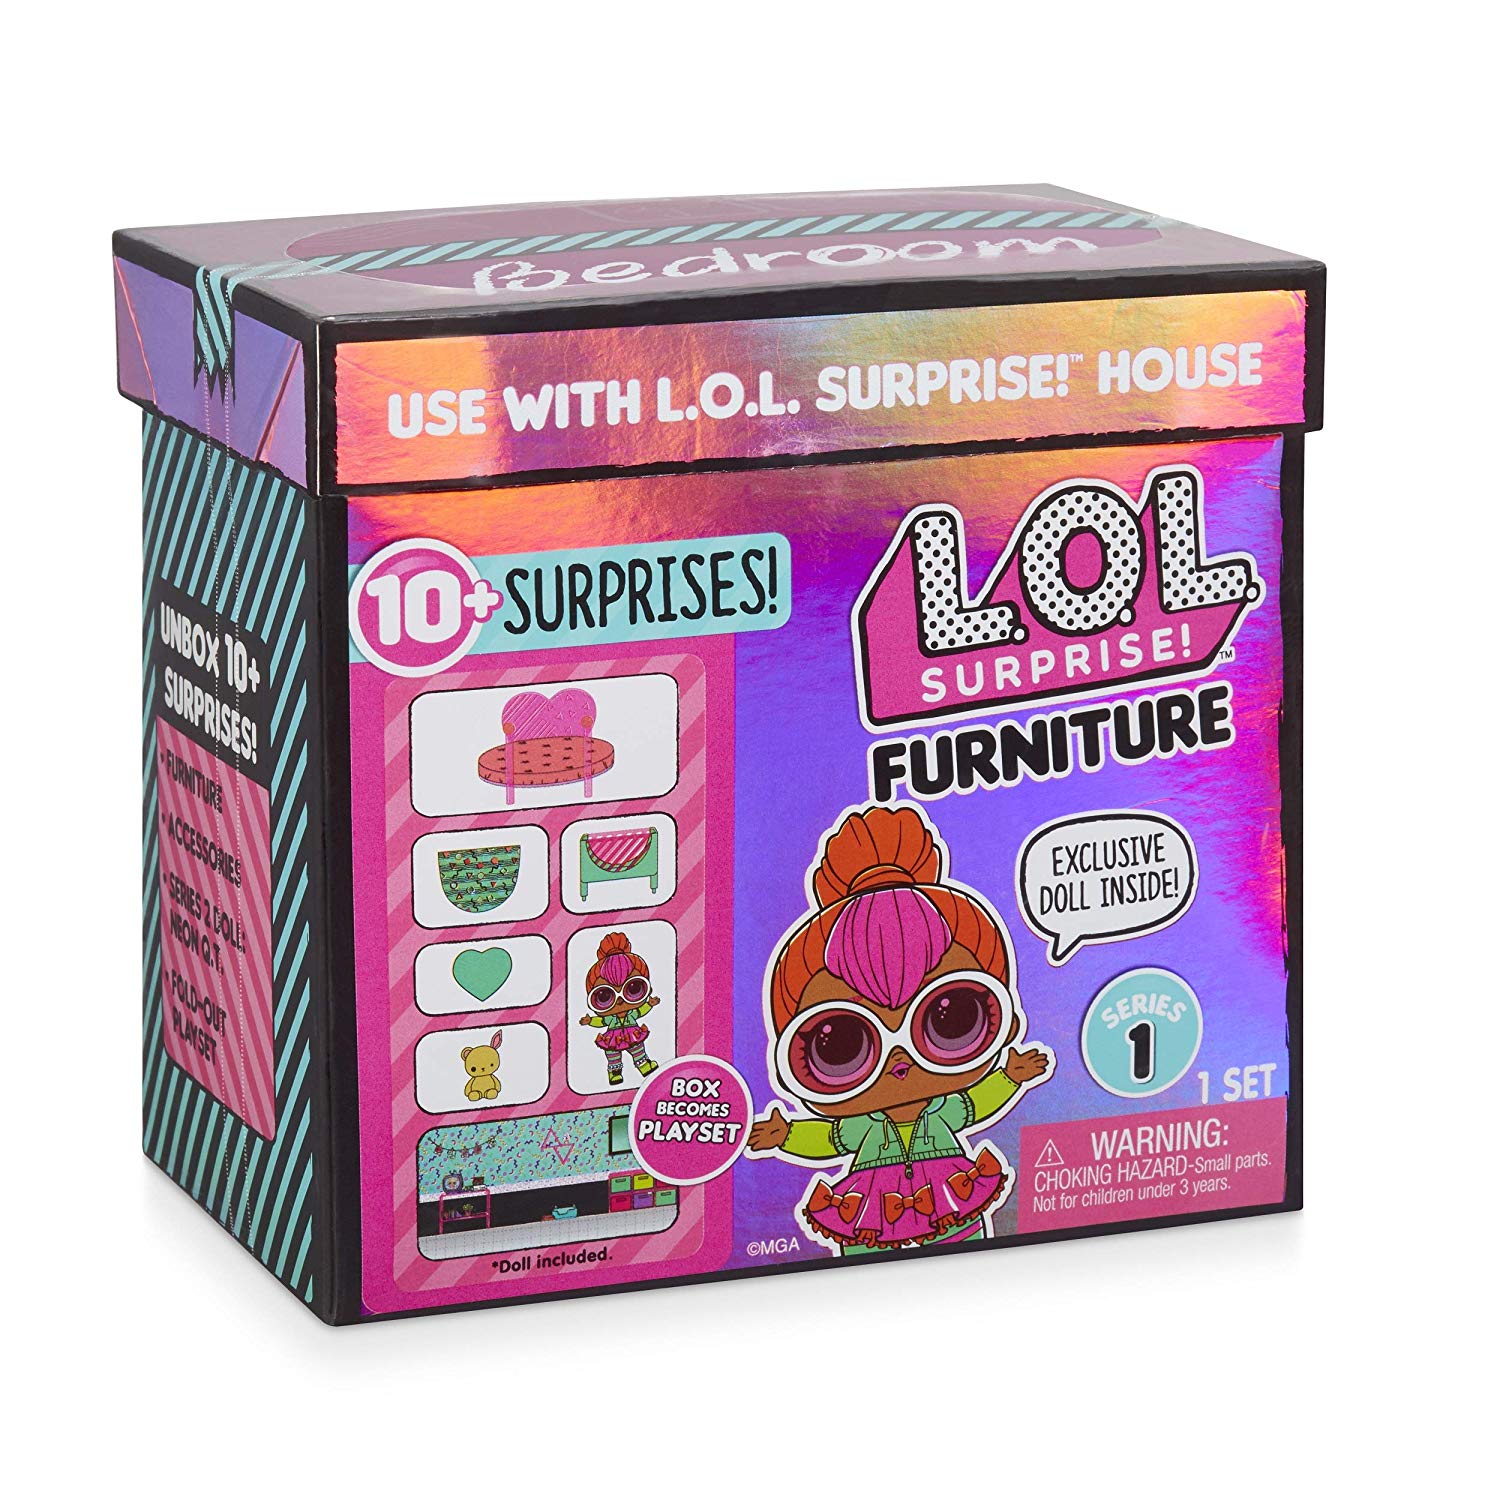 L.O.L. Surprise Furniture!